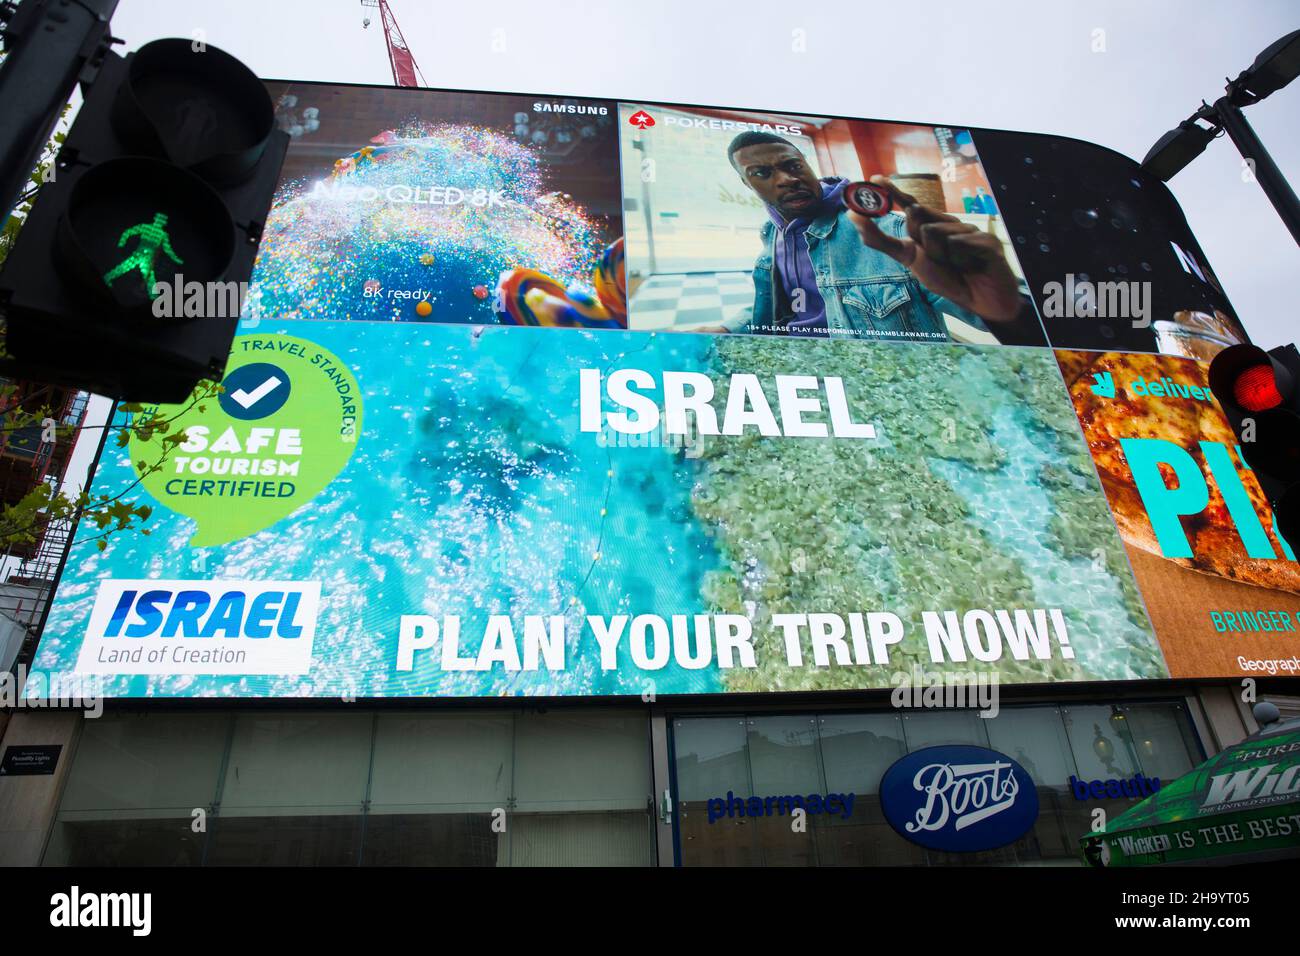 Eine Werbung für den israelischen Tourismus ist auf einer großen elektrischen Tafel im Piccadilly Circus, London, zu sehen. Stockfoto